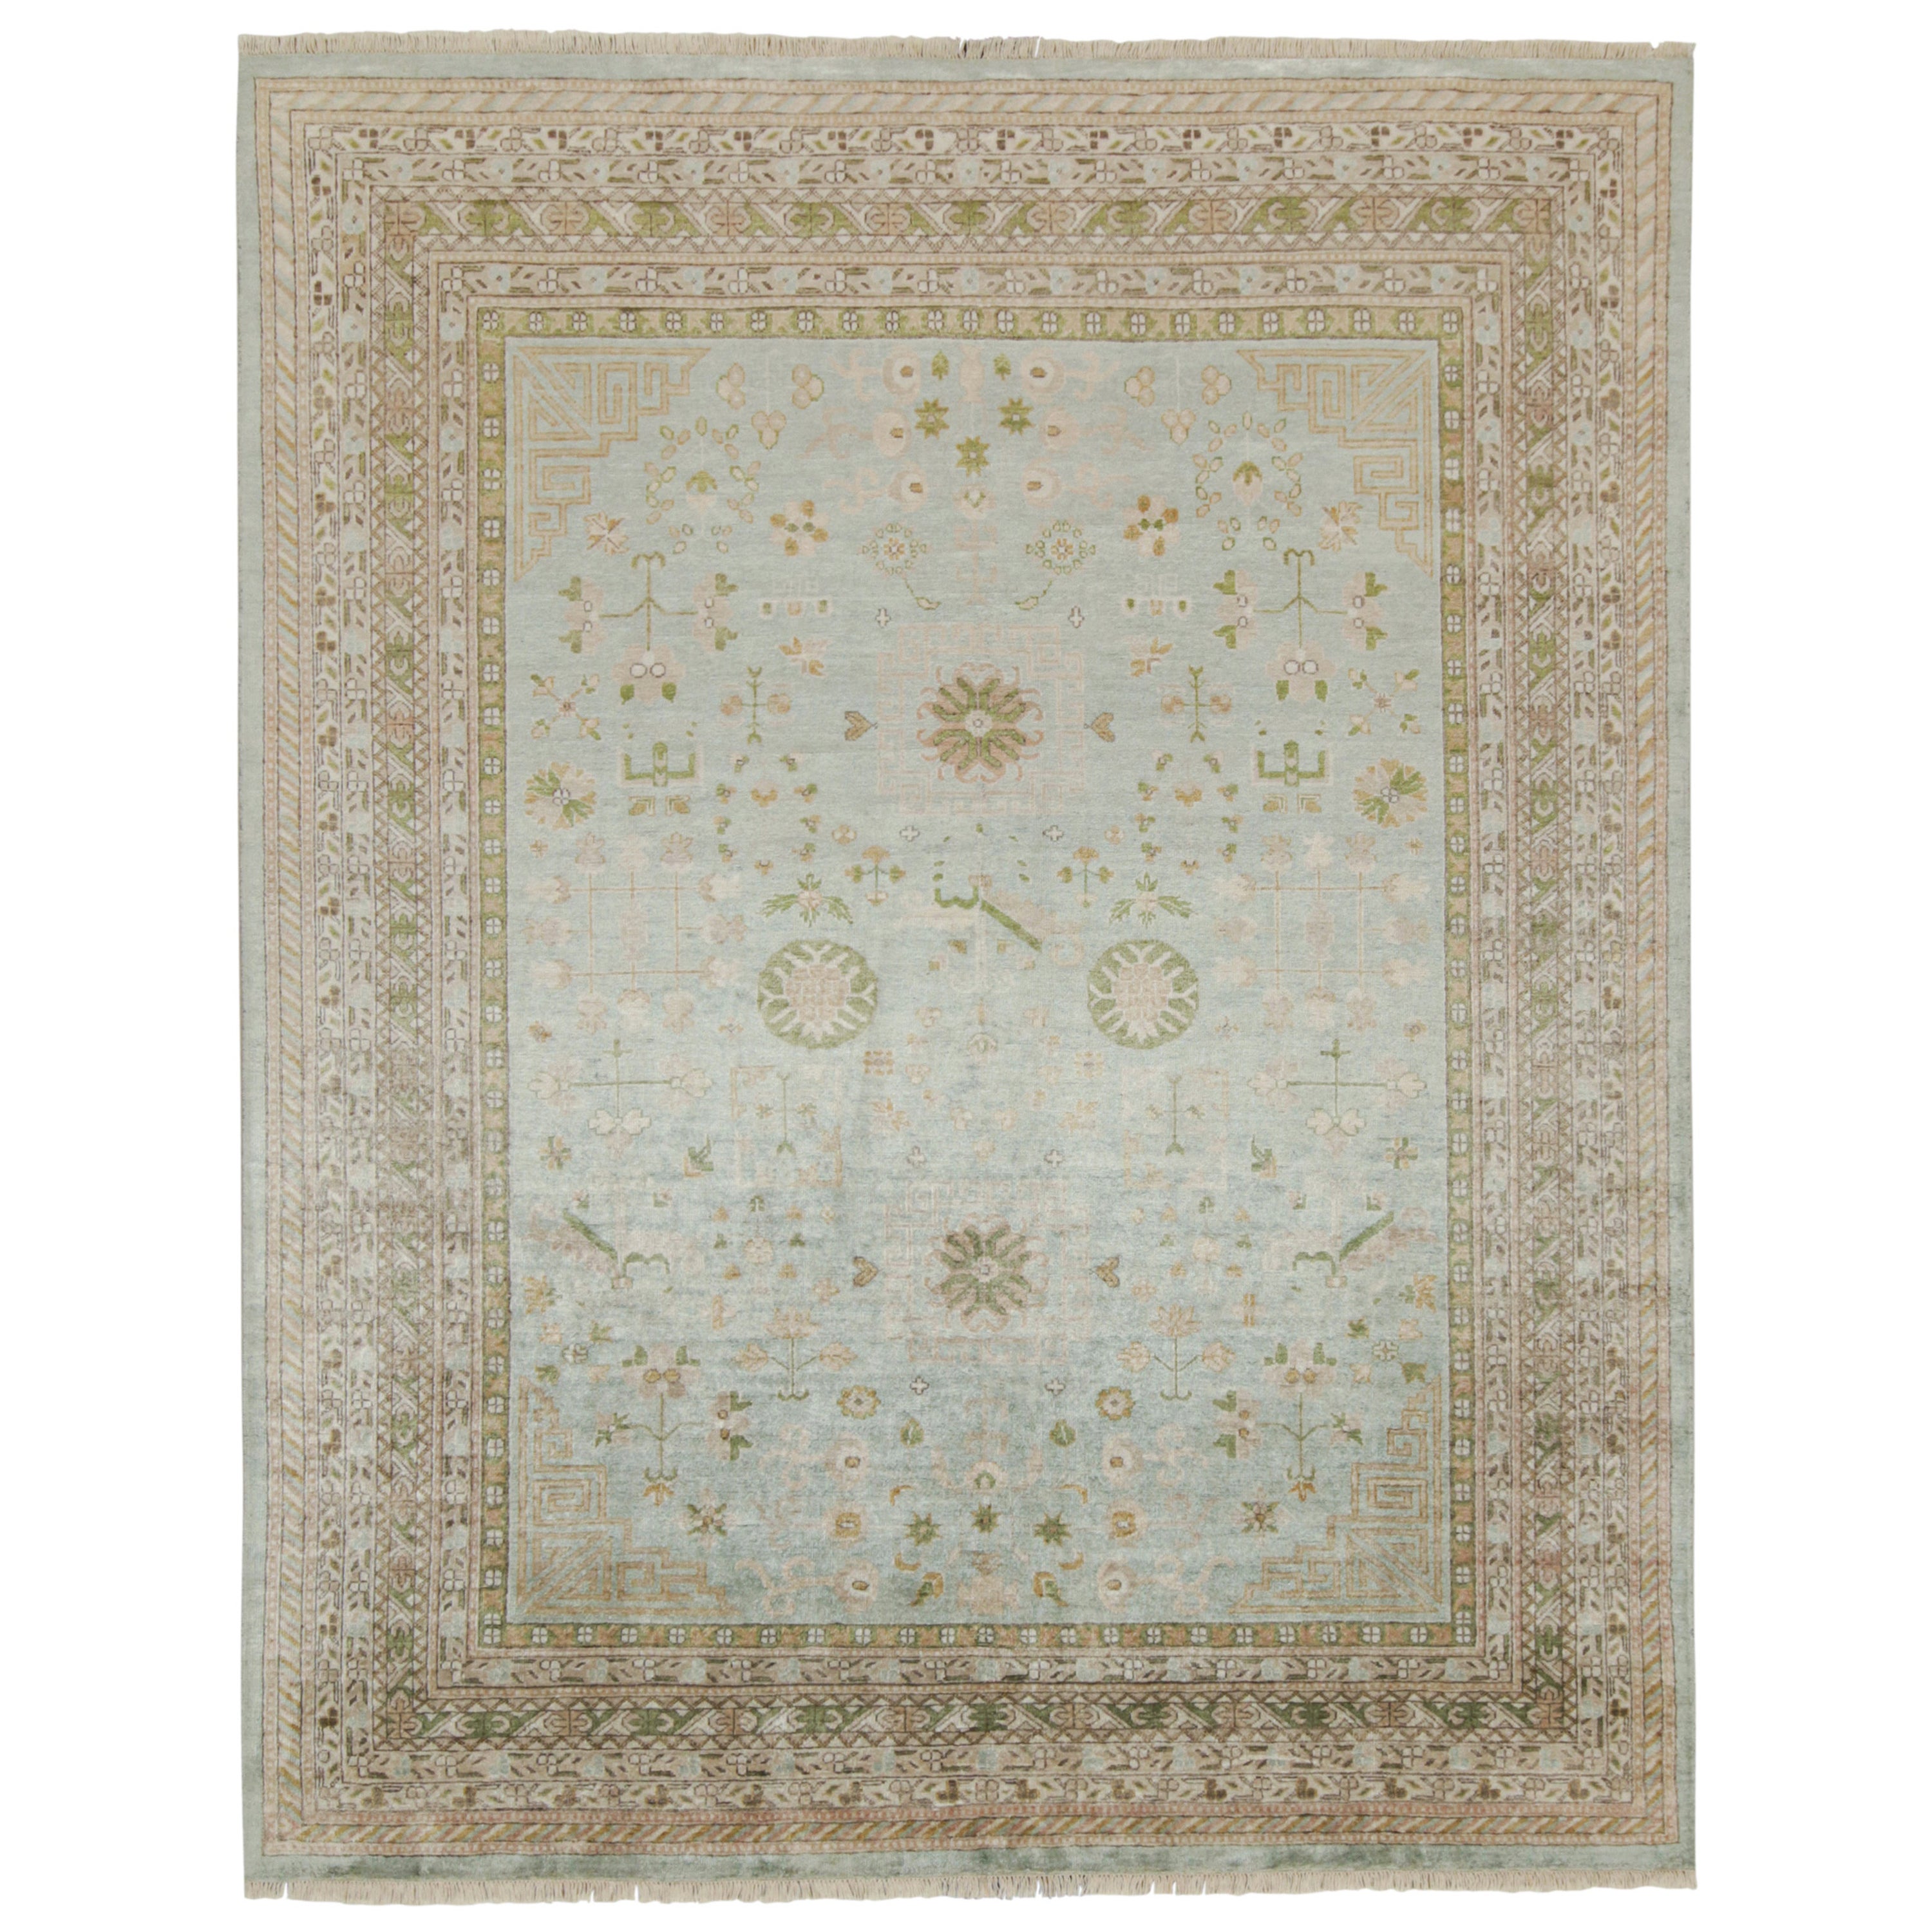 Rug & Kilim's Teppich im Khotan-Stil mit blauem und braun-beigefarbenem geometrischem Muster